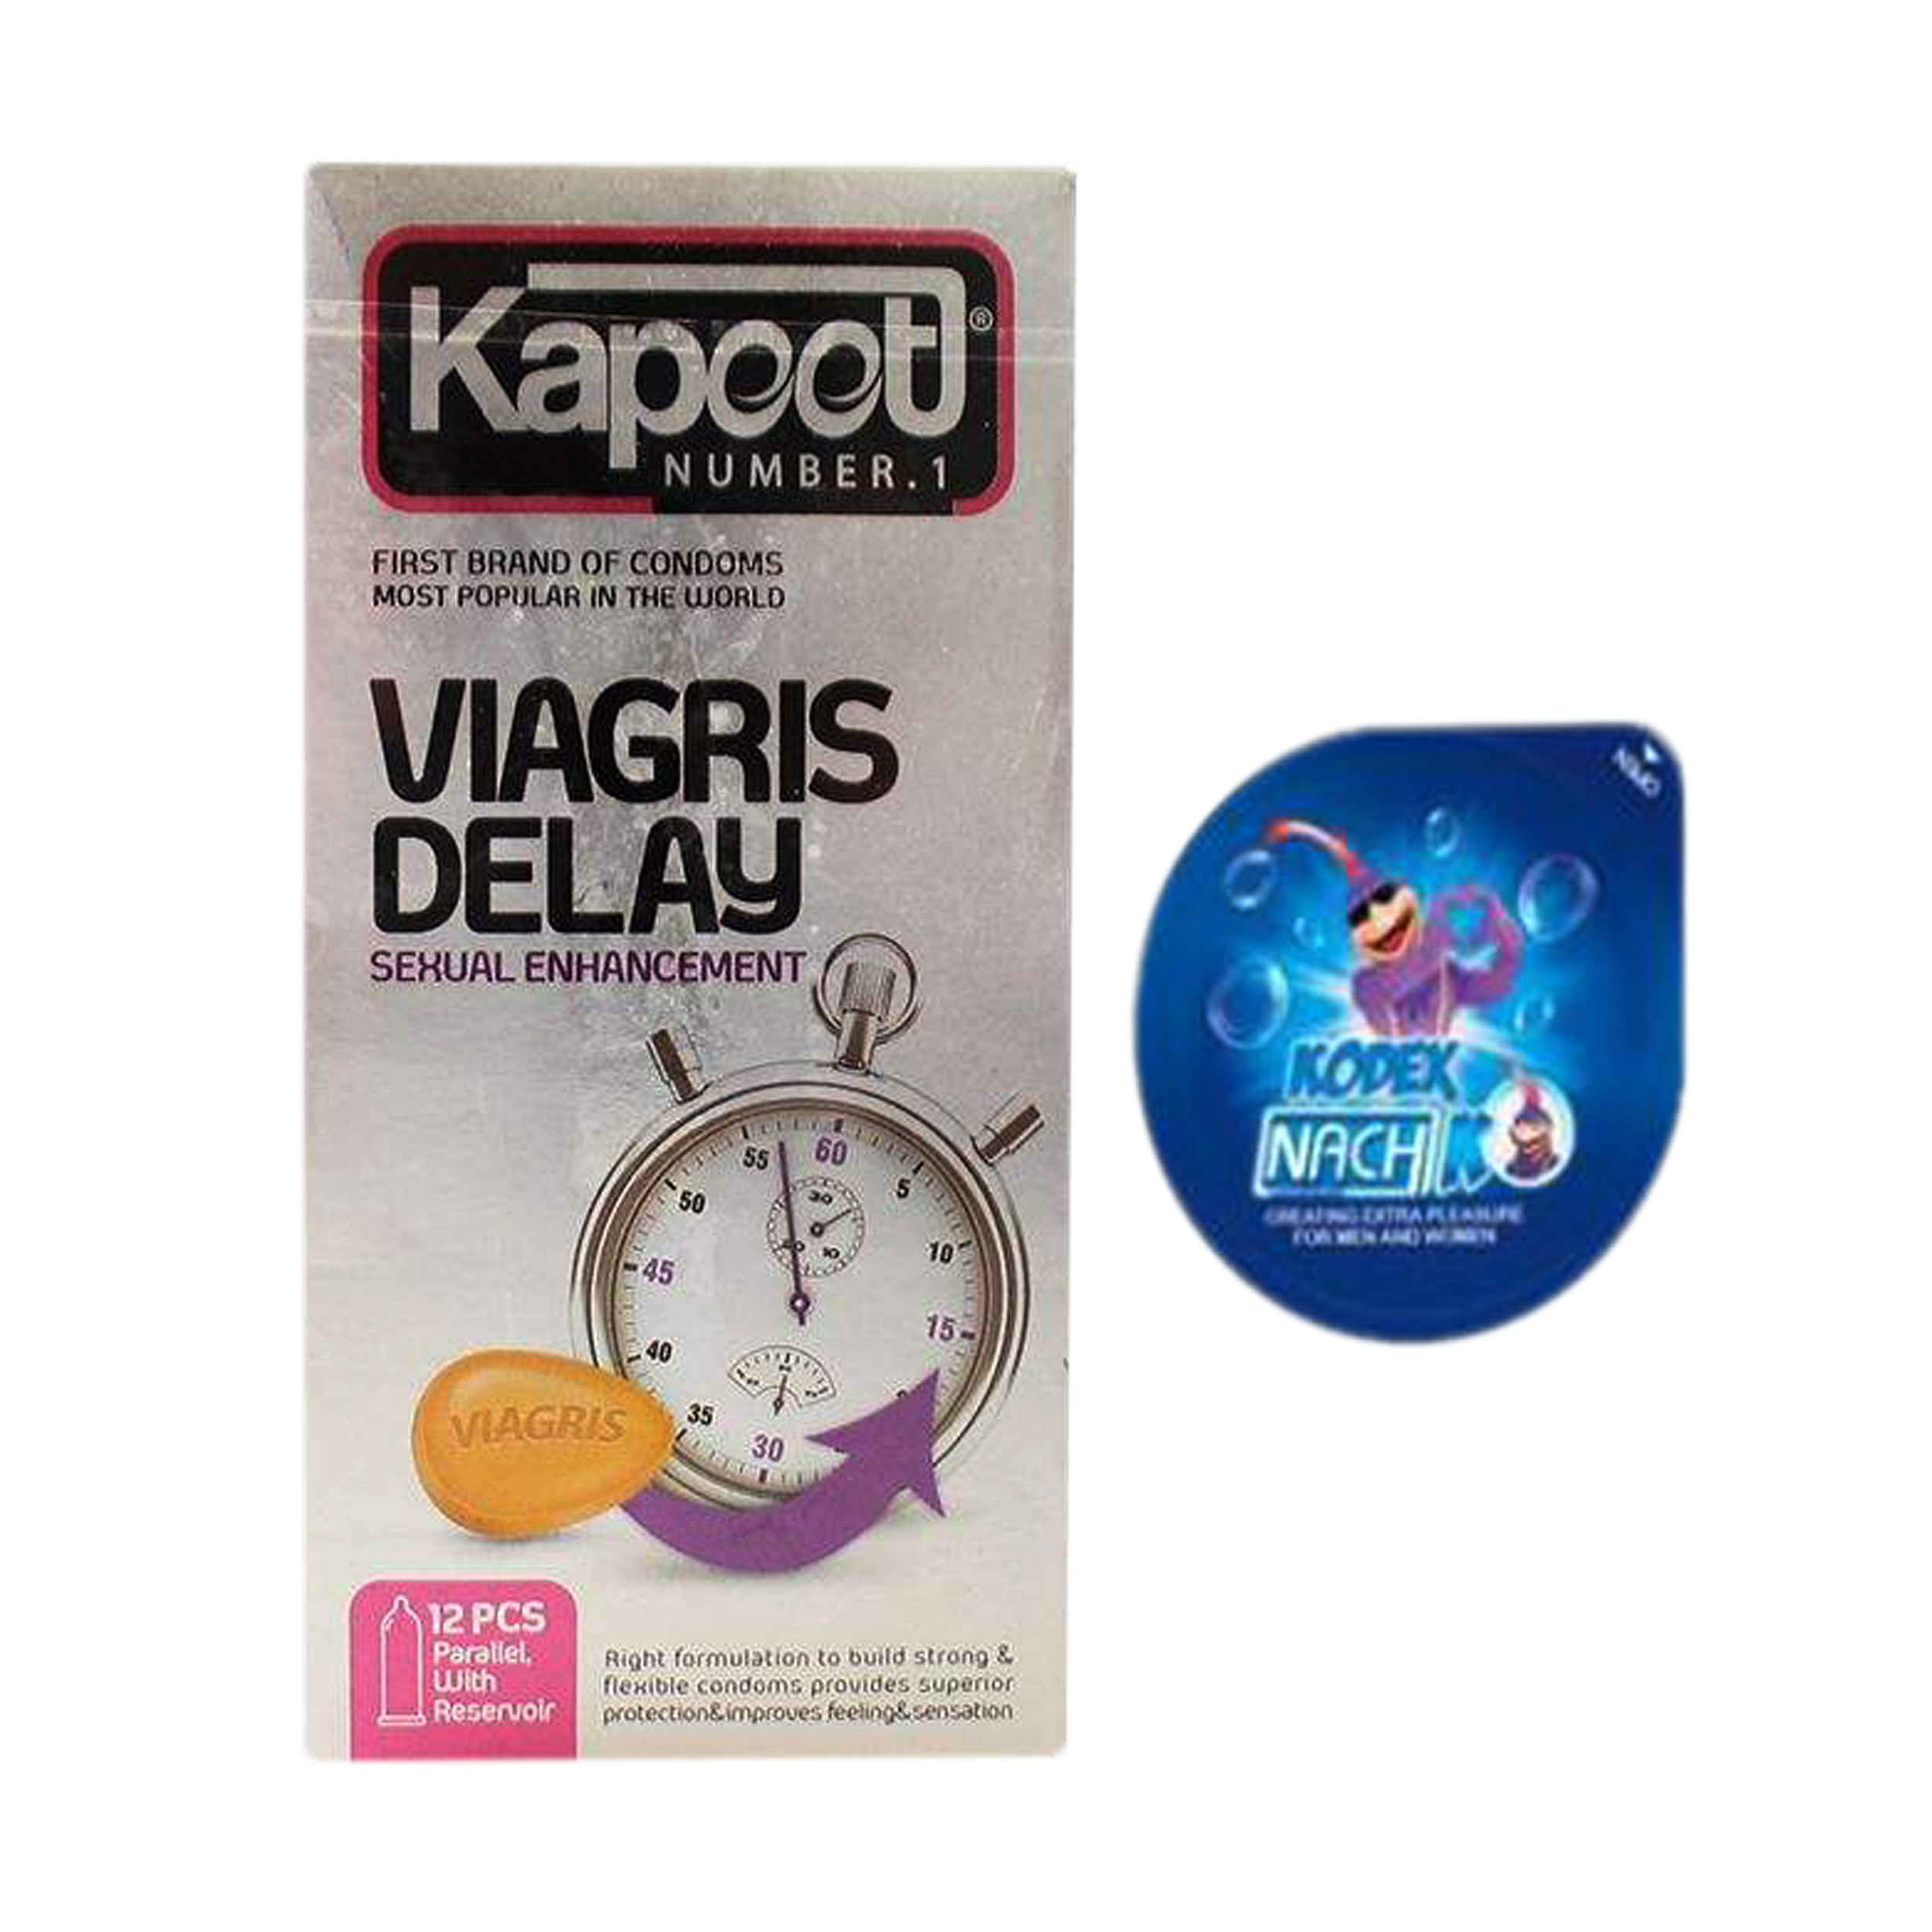 کاندوم کاپوت مدل Viagris Delay بسته 12 عددی به همراه کاندوم ناچ کدکس مدل بلیسر